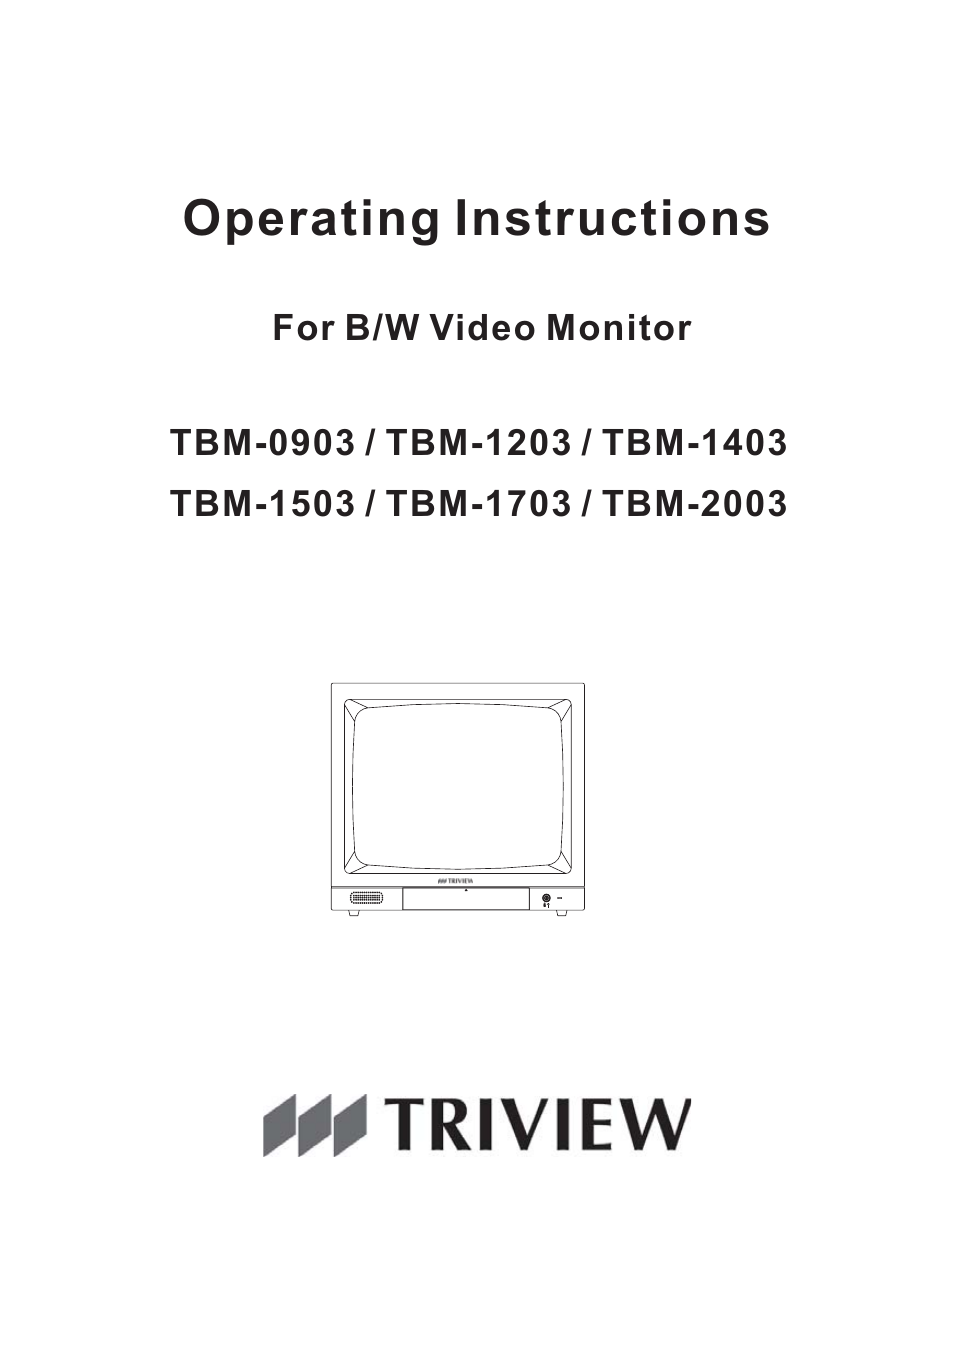 B/W Video Monitor TBM-2003